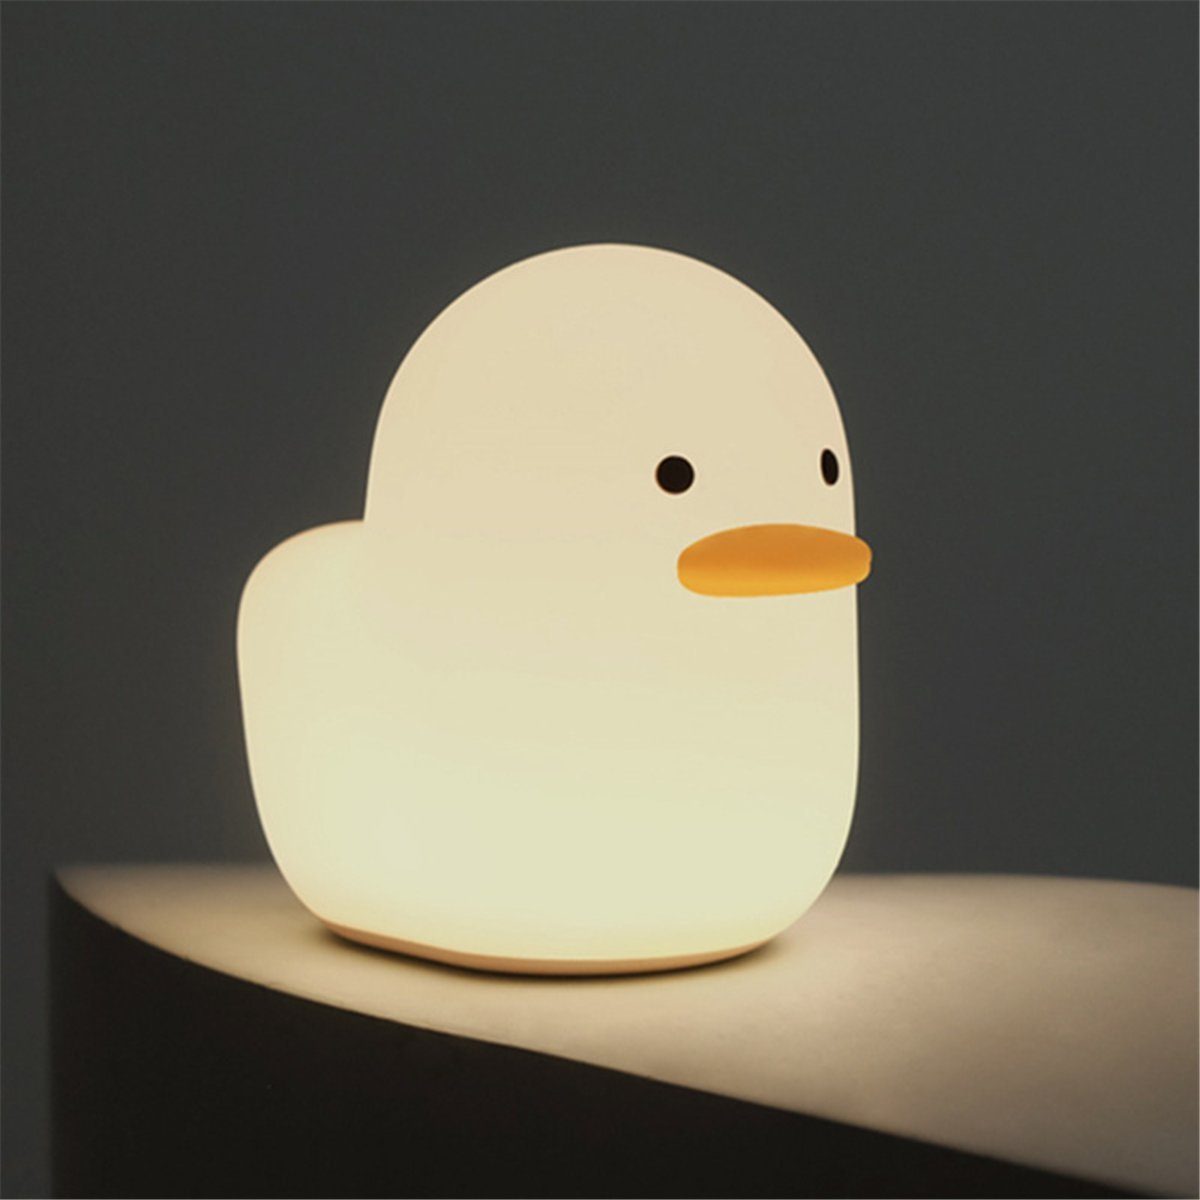 Touch-Steuerung Wiederaufladbares, für mit Kinder K&B Nachtlicht Entenlicht dimmbares LED